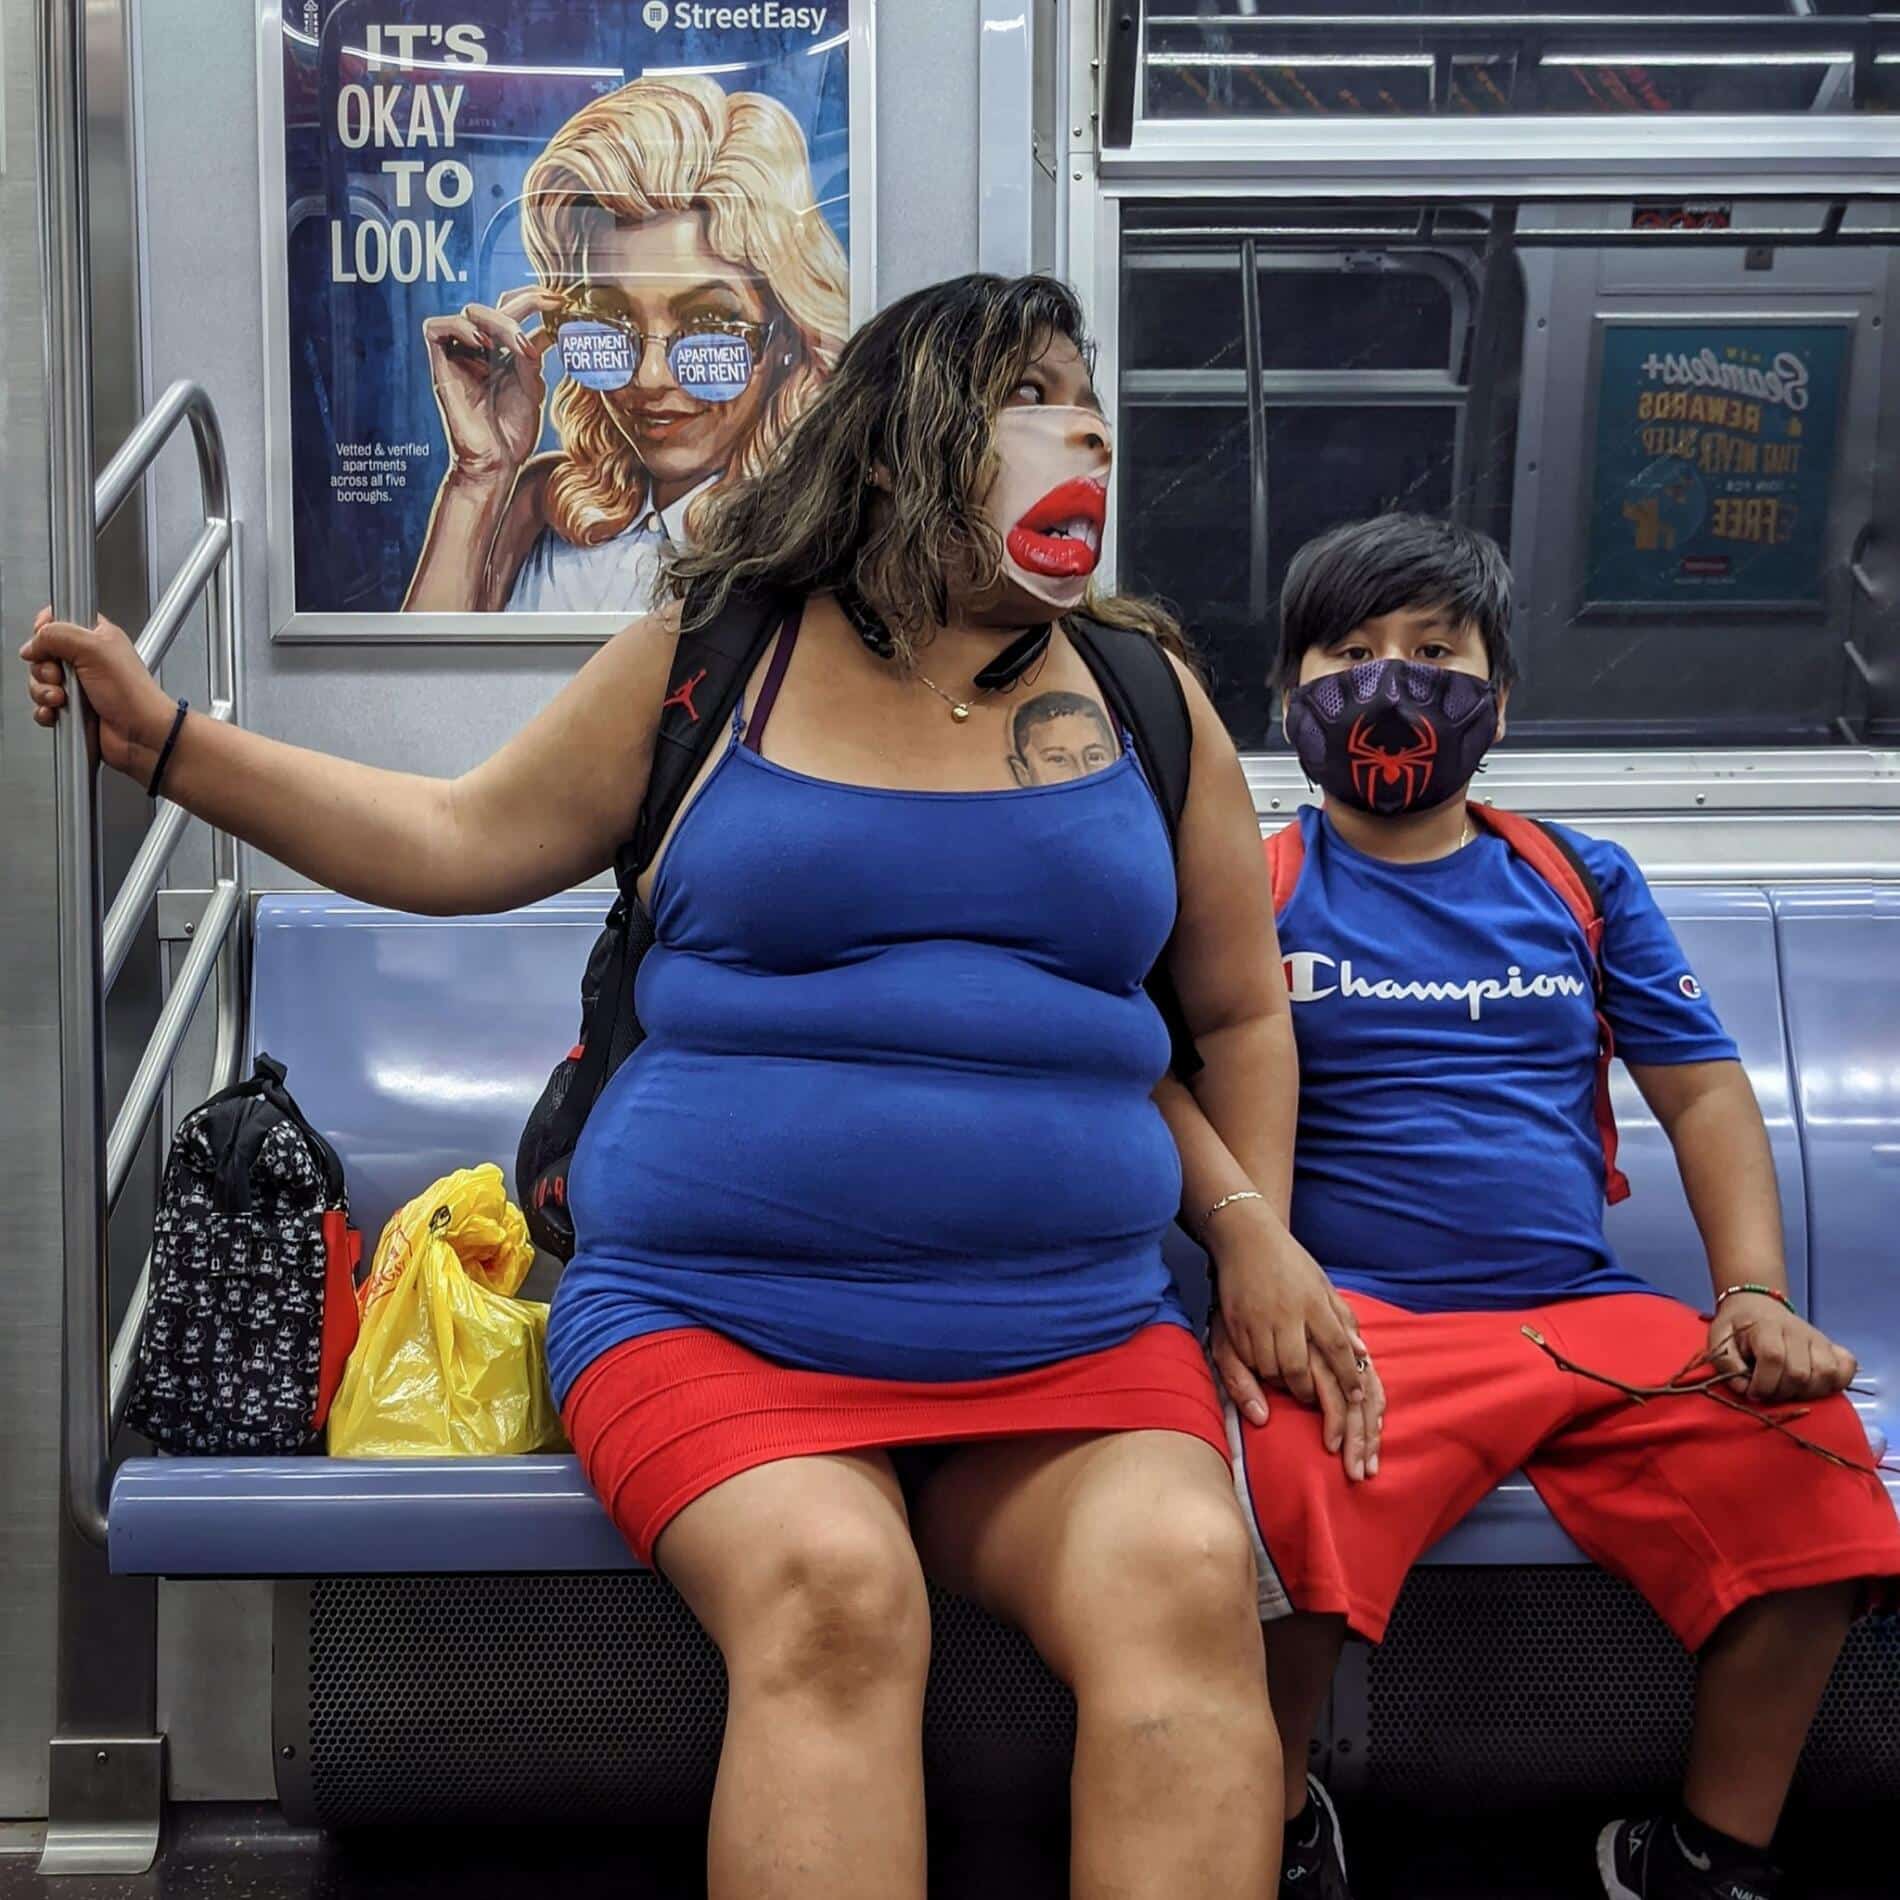 chris maliwat retrato de viajeros en nueva york mascarillas